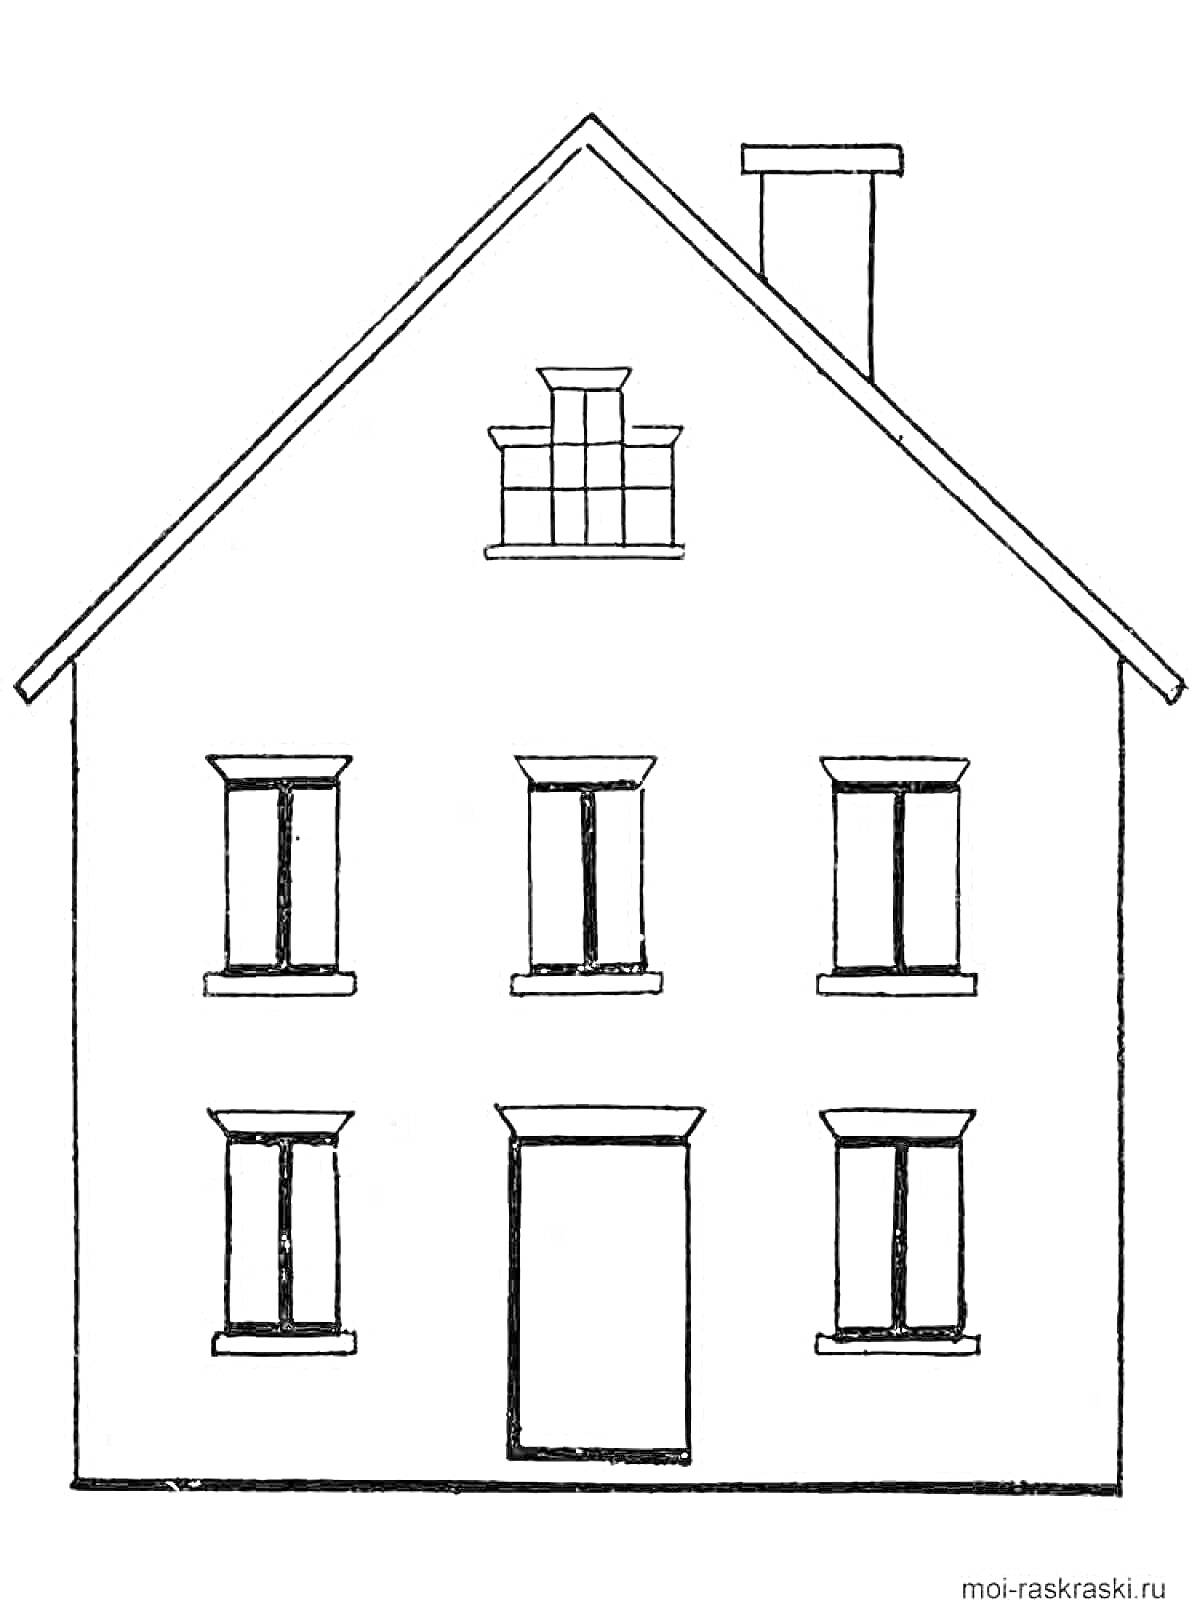 Раскраска Дом с окнами, дверью, трубой и балконом